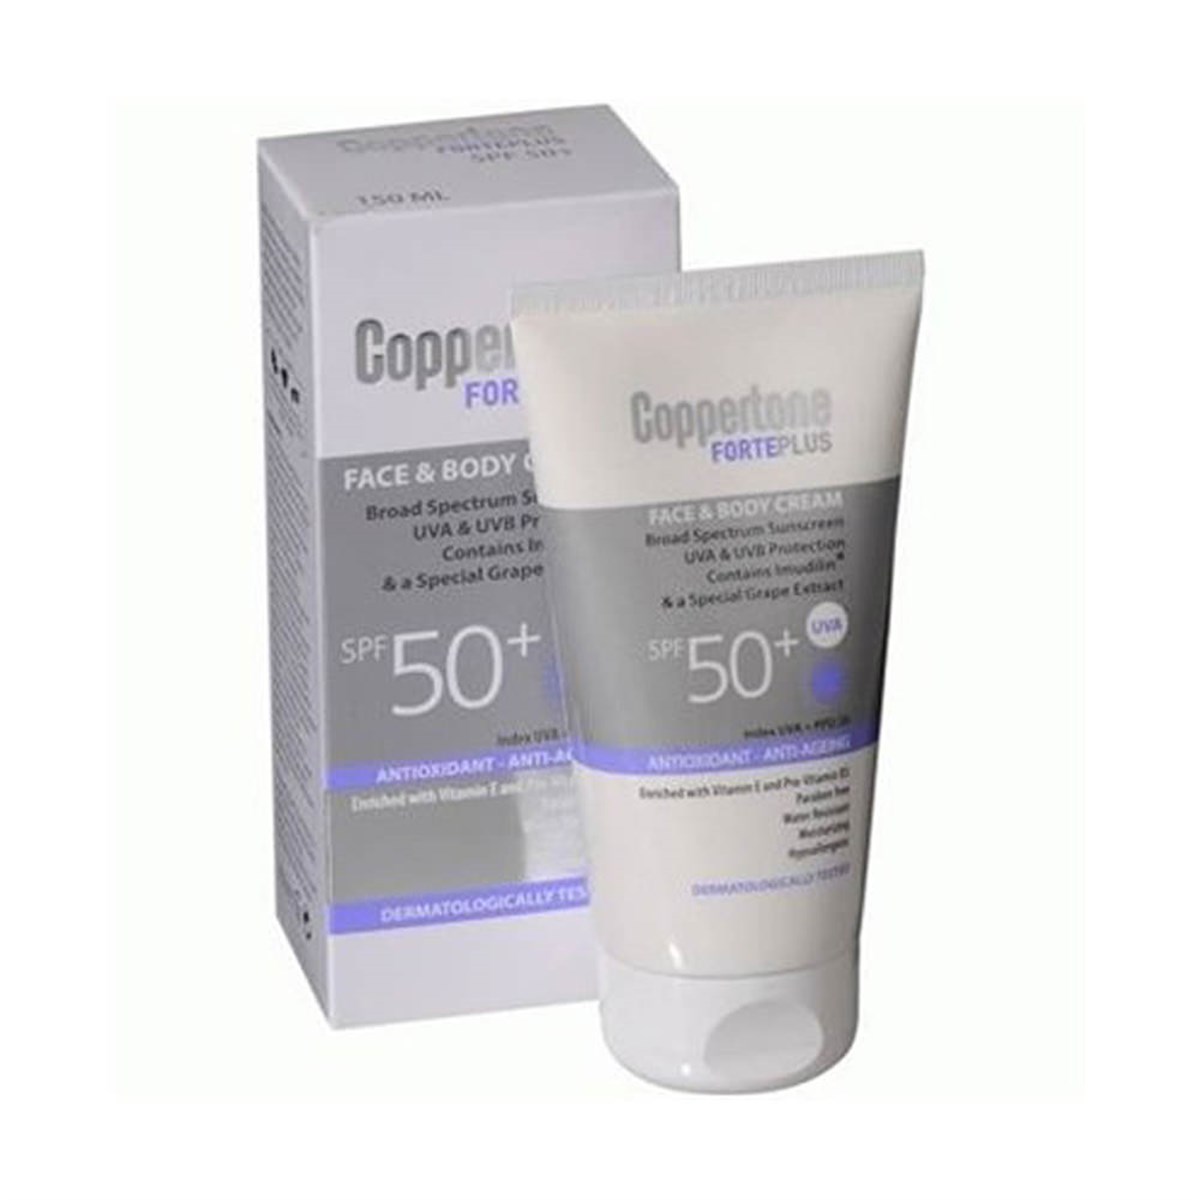 Coppertone Forte Plus Krem SPF 50+ 150 ml Anti ageing Yüz ve Vücut Güneş  Koruyucu